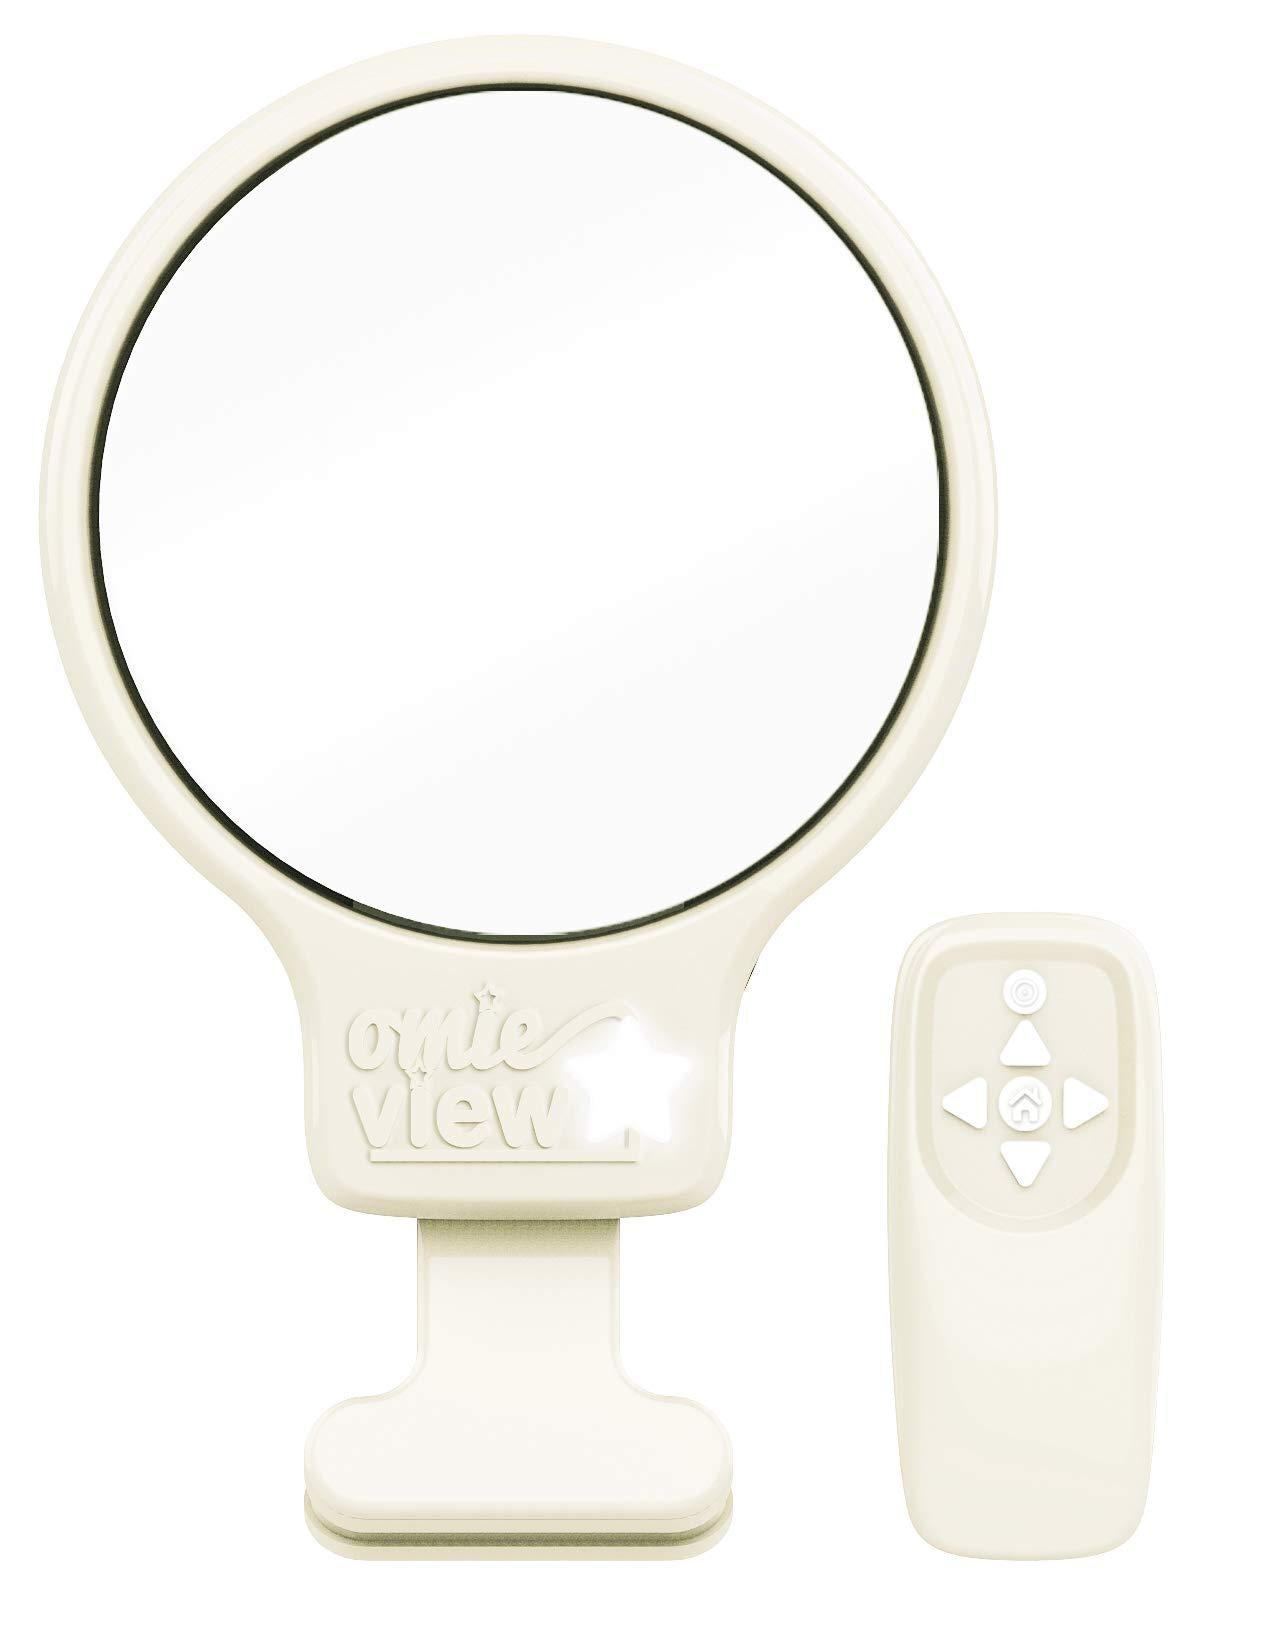 Espejo de cuna Omie View – Espejo de clip con mando a distancia y luz LED para monitoreo